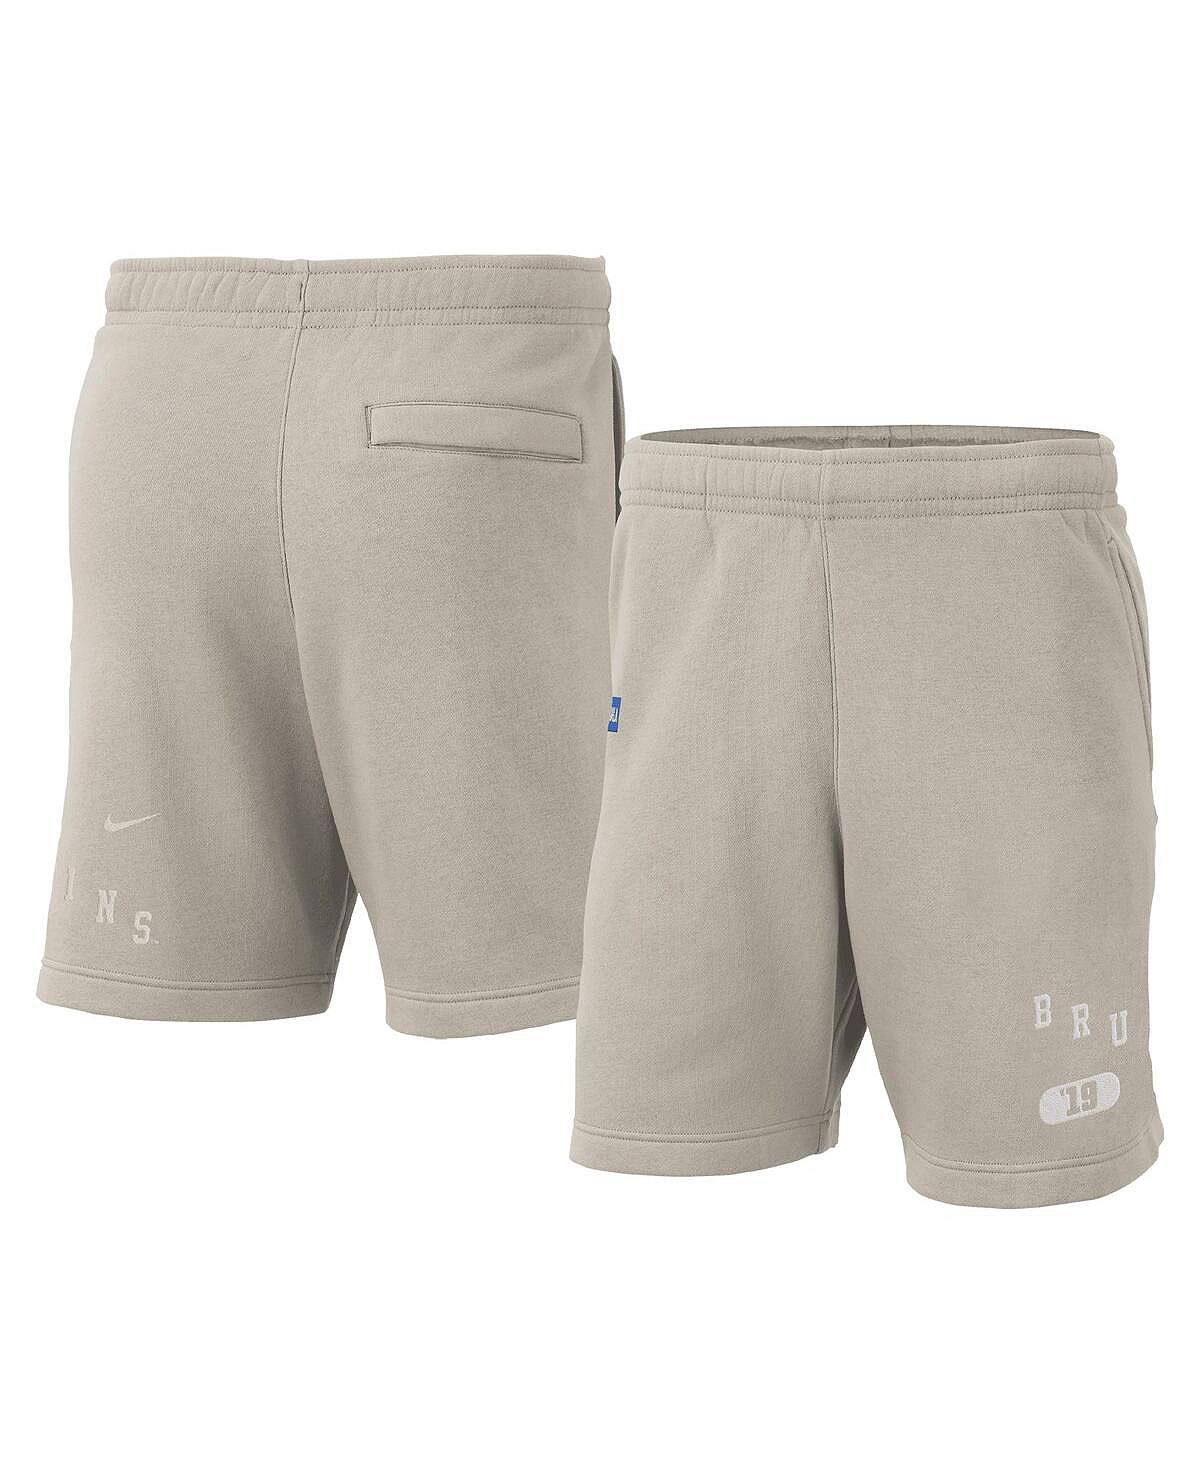 цена Мужские флисовые шорты кремового цвета UCLA Bruins Nike